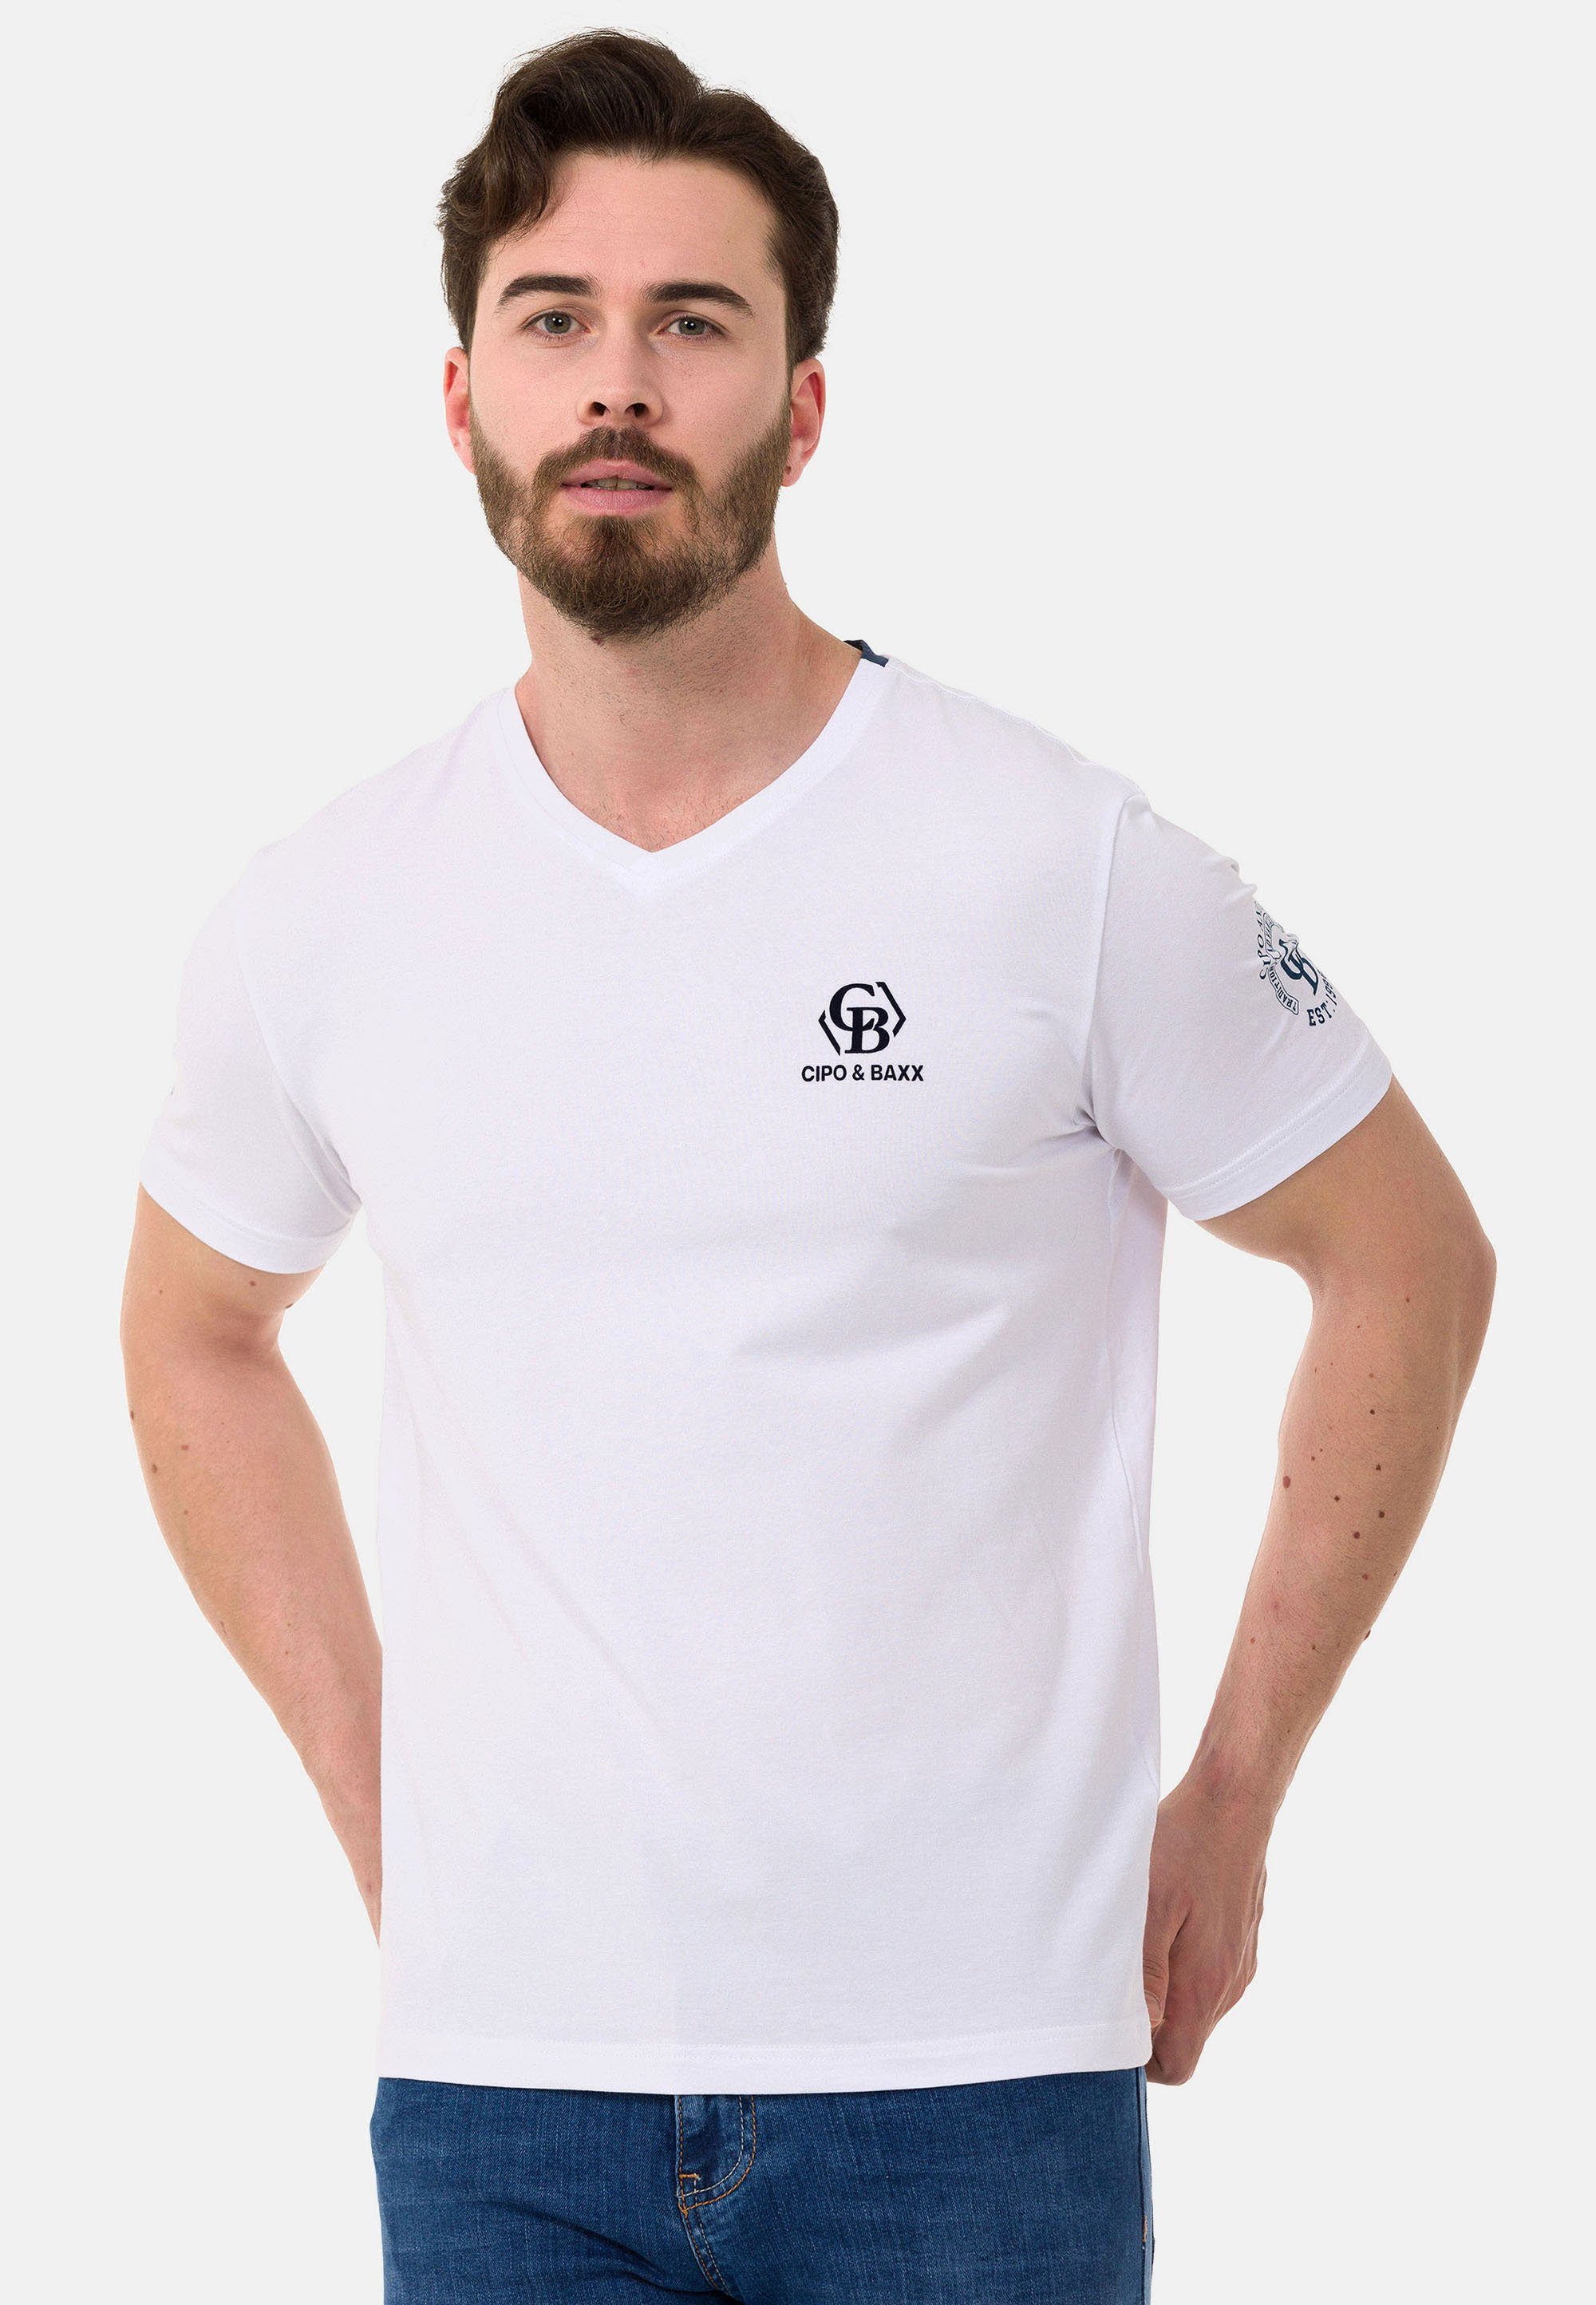 Shop zu supergünstigen Preisen Cipo & Baxx T-Shirt Markenlogos mit dezenten weiß